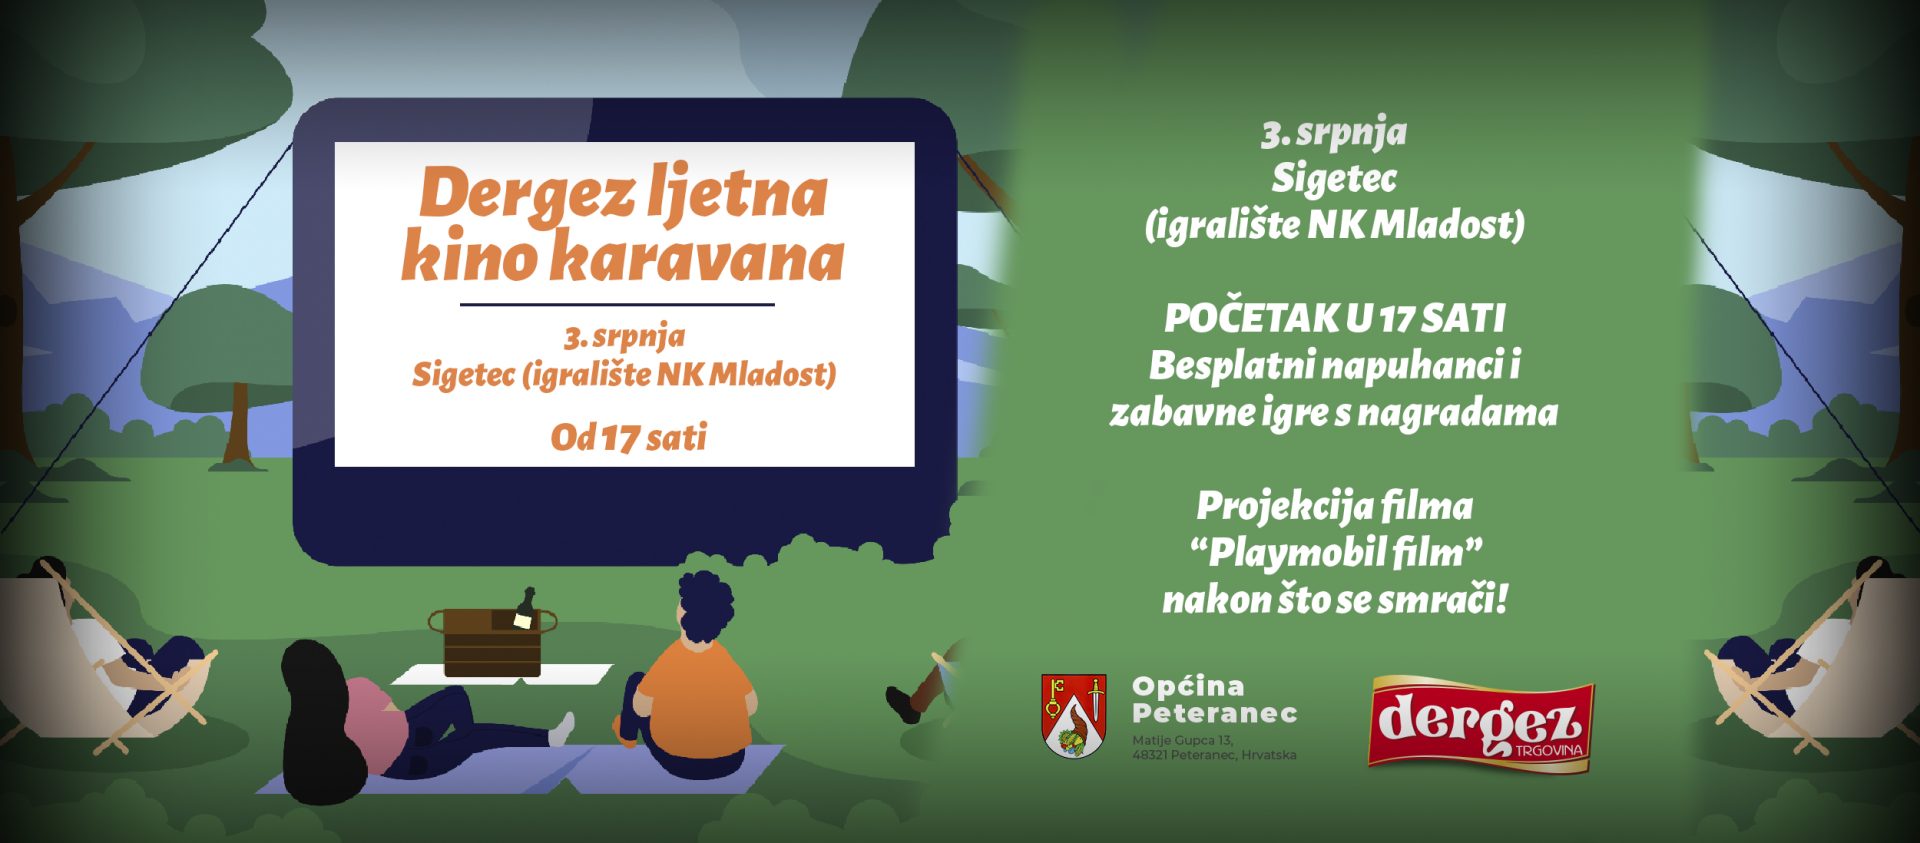 Dergez i Općina Peteranec vas pozivaju na kino na otvorenom u Sigecu